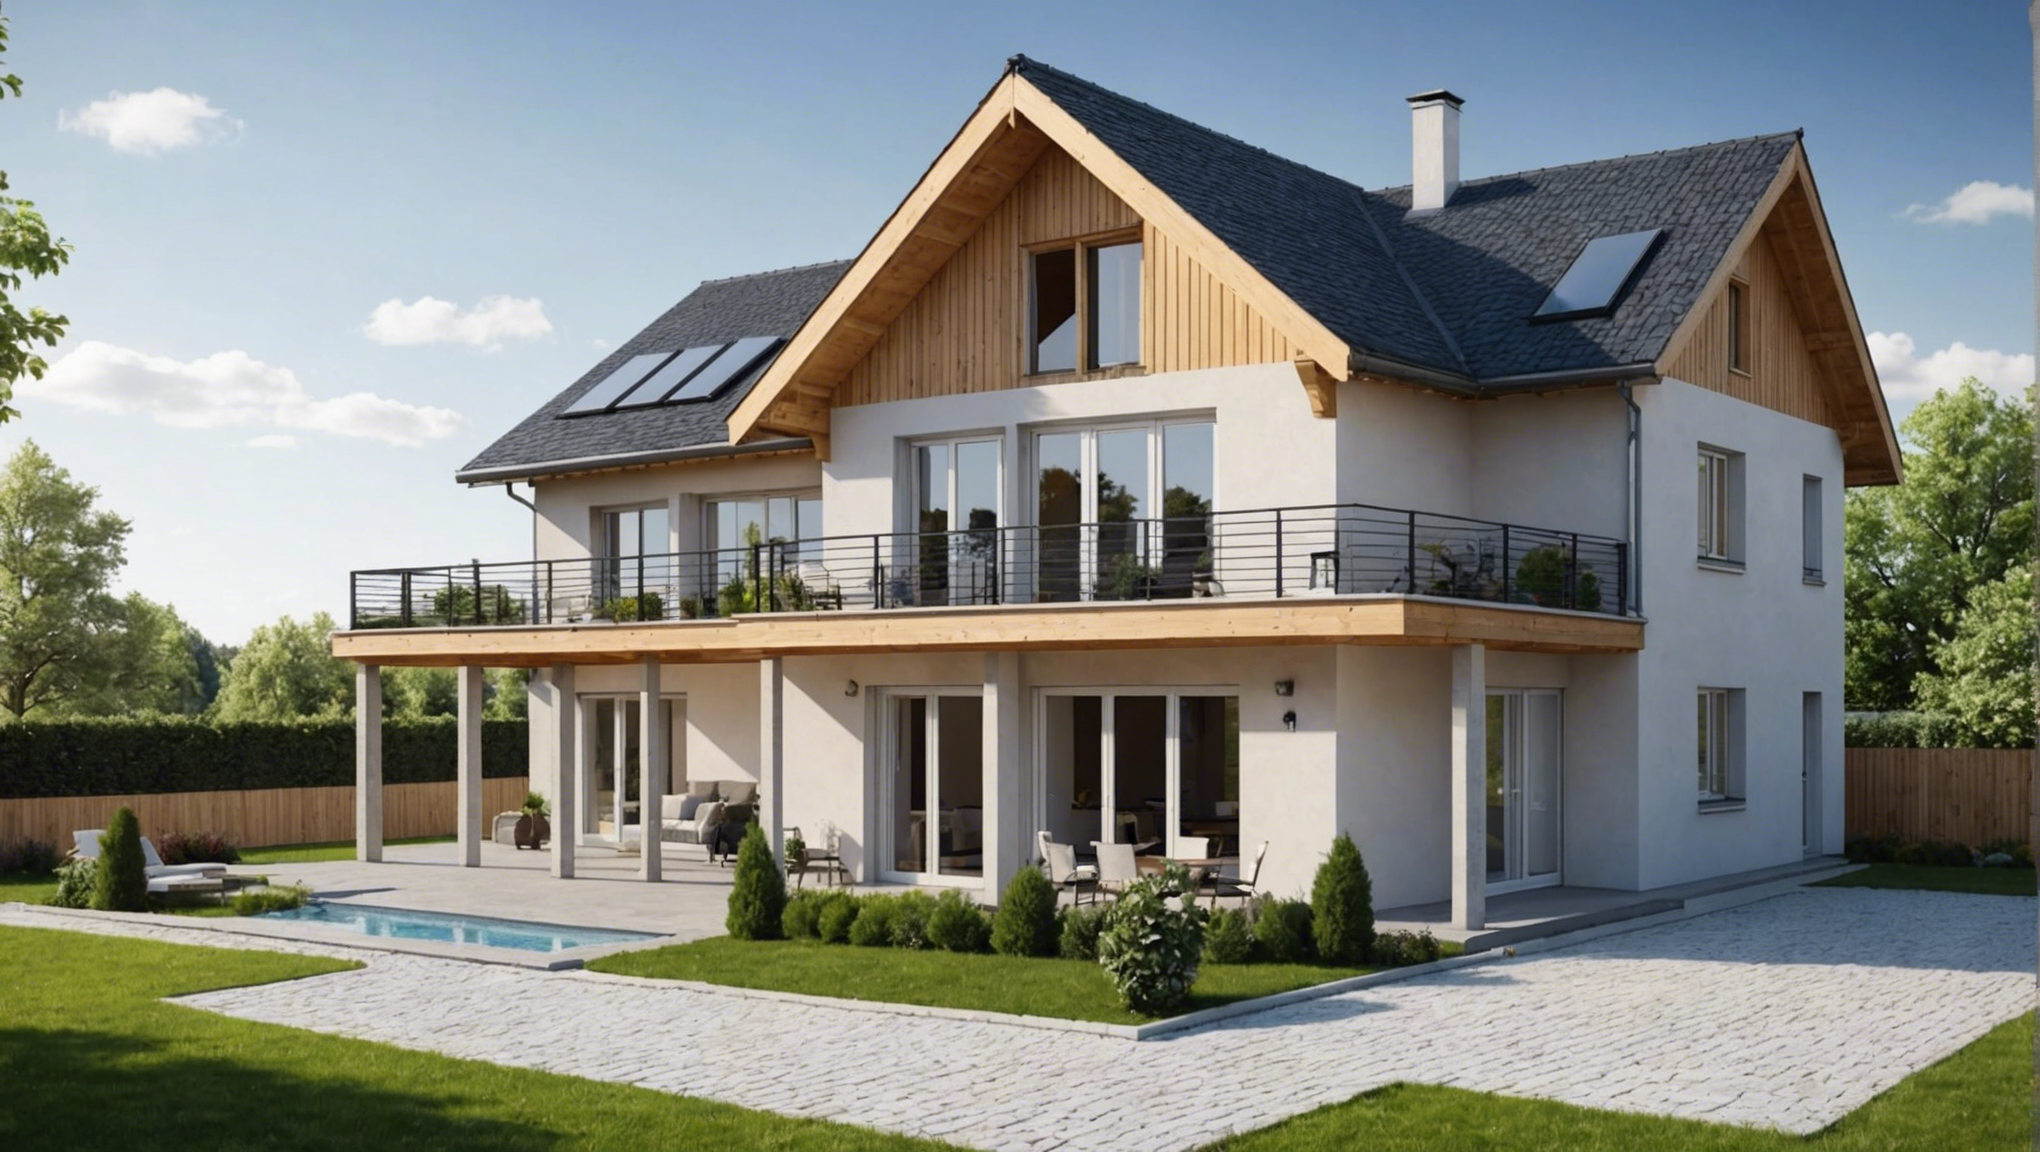 découvrez le nouveau type de construction de maisons qui révolutionne l'industrie de l'immobilier.